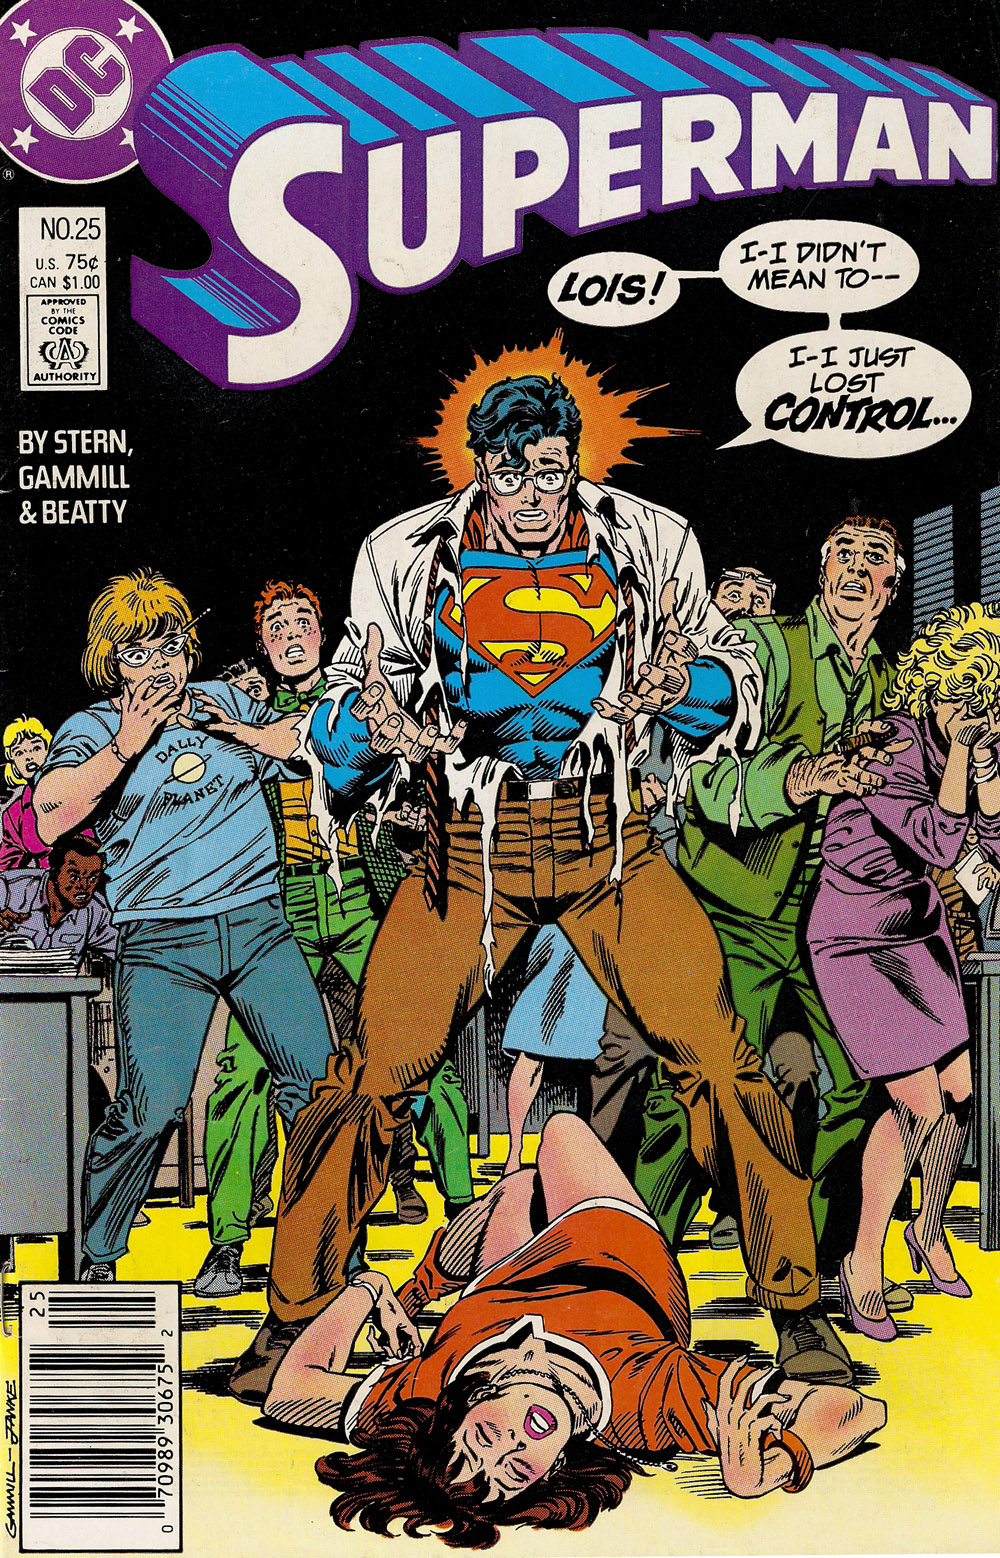 Superman (Vol. 2) #025